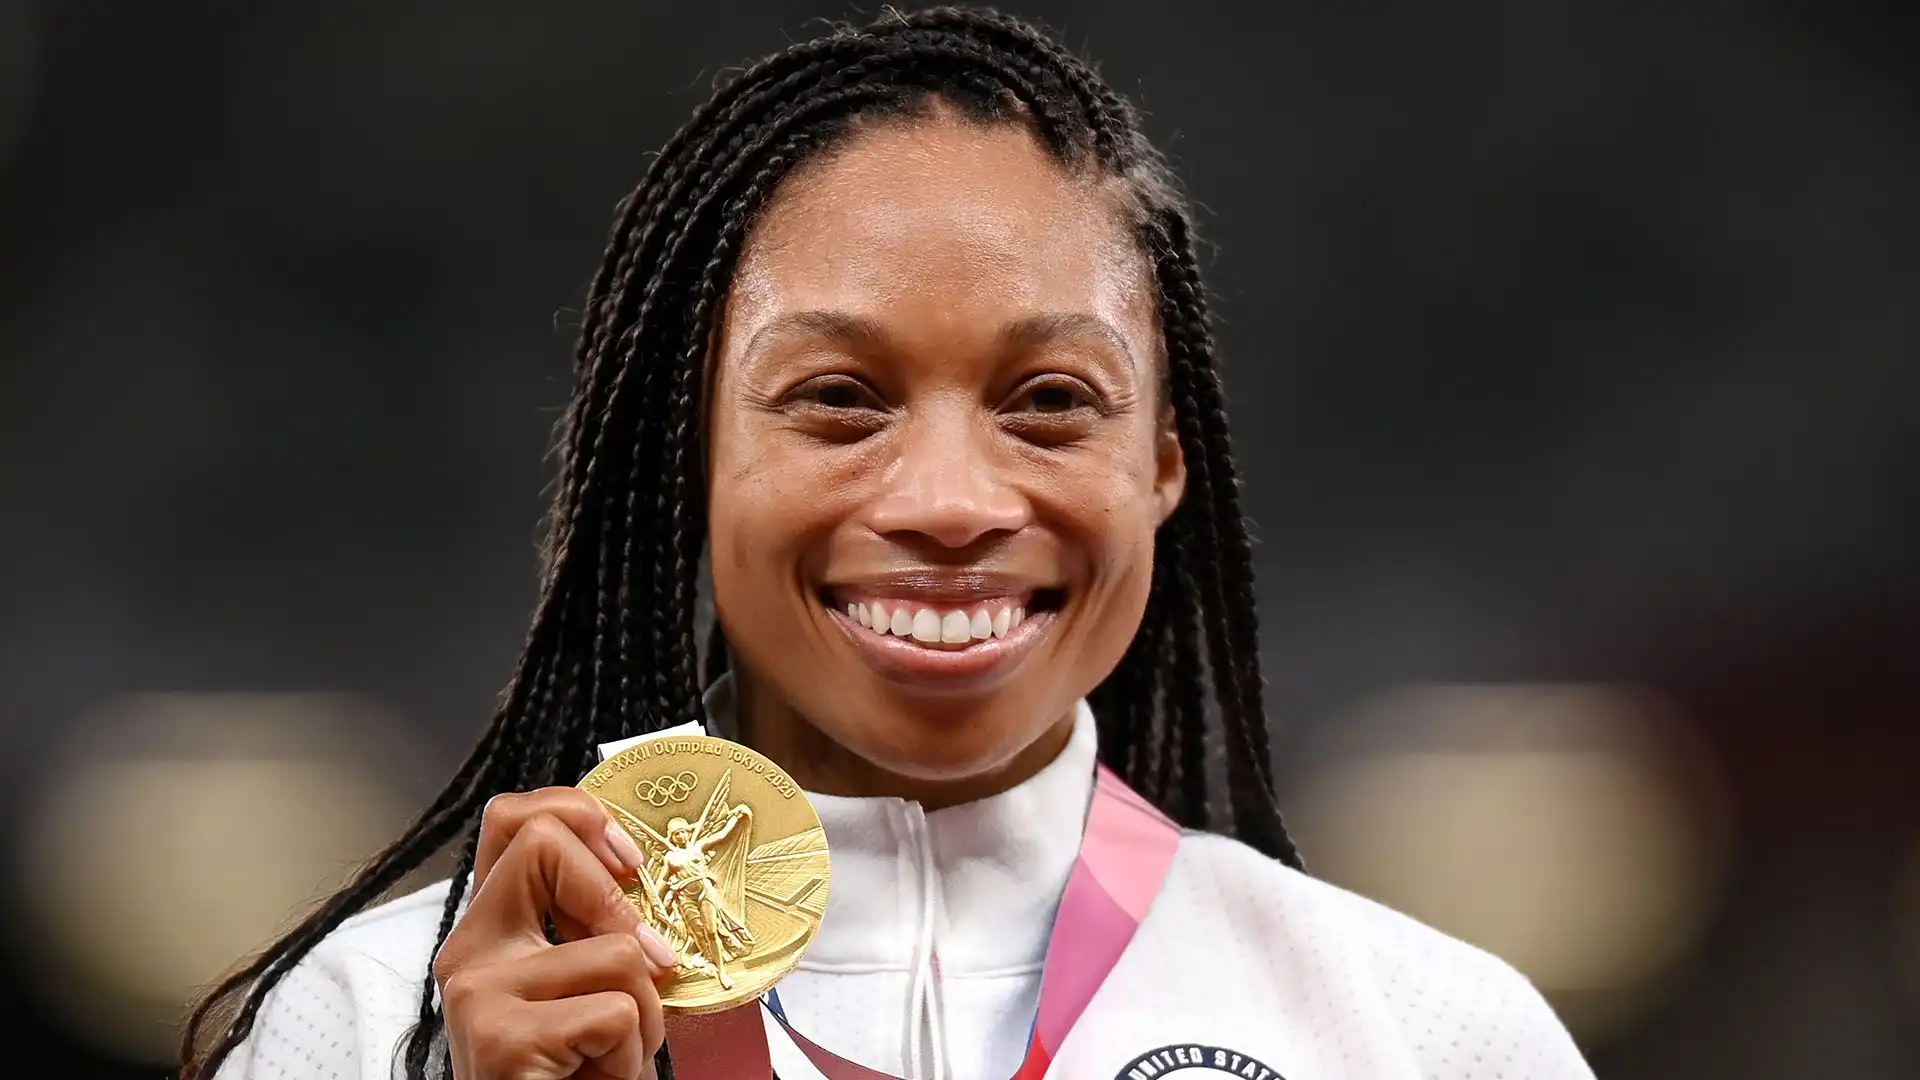 Nel 2021, ha vinto la medaglia d'argento nei 400 metri piani alle Olimpiadi di Tokyo, diventando la donna più medagliata nella storia dell'atletica leggera americana